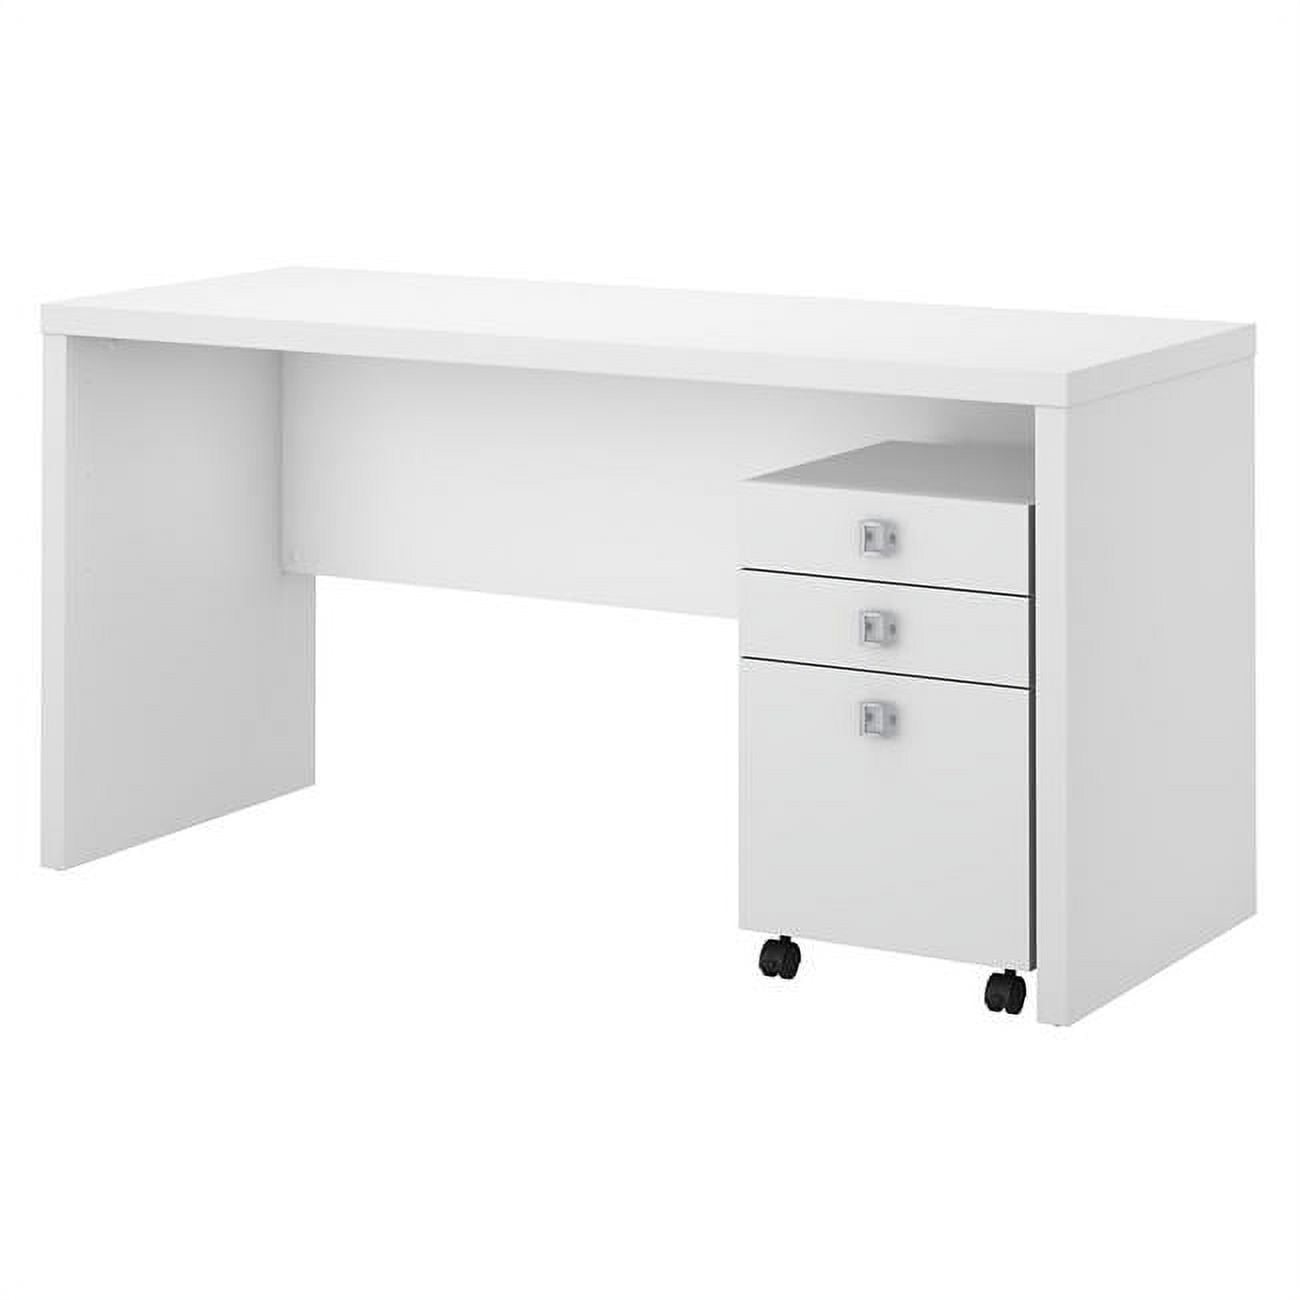 Picture of Bush Business Furniture ECH003PW Echo Credenza Desk with Mobile File Cabinet - Pure White